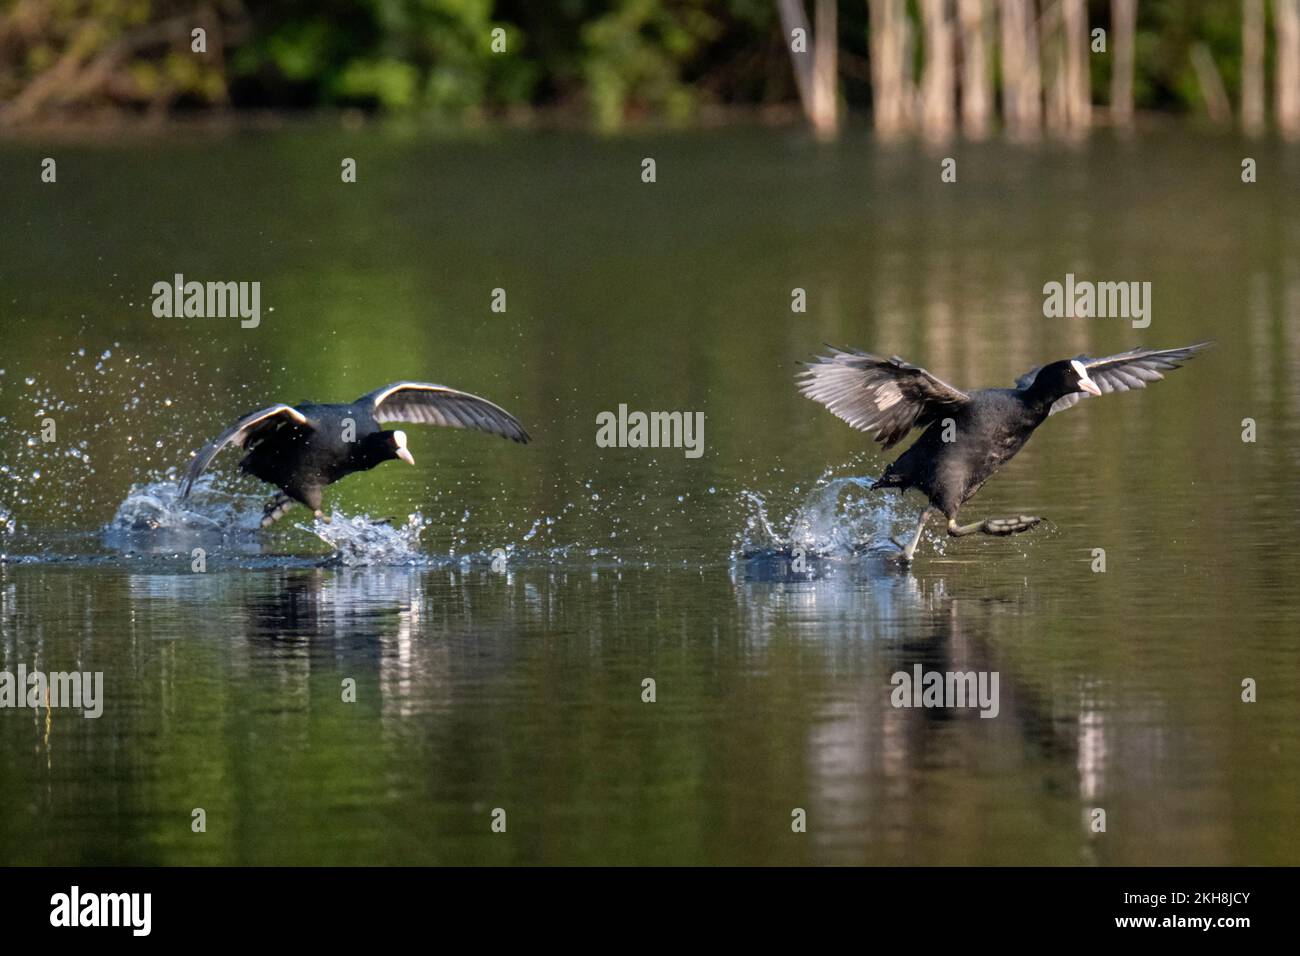 Cuochi (Fulica atra) che corrono attraverso l'acqua e combattono, New Pool, WhiteGate, Cheshire, Inghilterra, REGNO UNITO Foto Stock